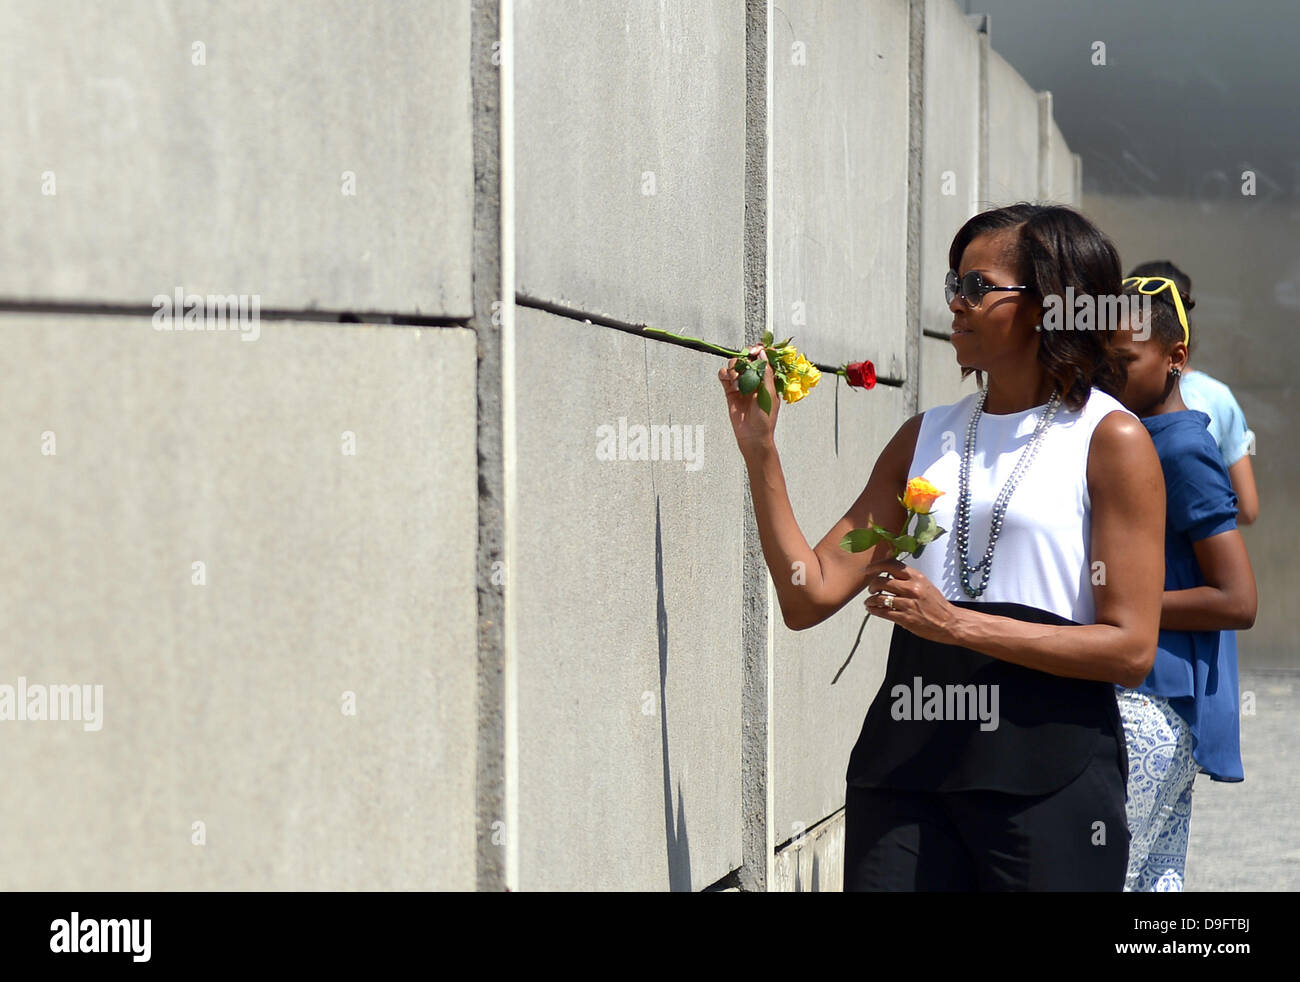 Berlino, Germania. 19 giugno 2013. Noi la first lady Michelle Obama (anteriore visita il Memoriale del Muro di Berlino con le sue figlie Sasha (C) e Malia (nascosto) di Berlino, Germania, 19 giugno 2013. Foto: Marcus Brandt/dpa/Alamy Live News Foto Stock